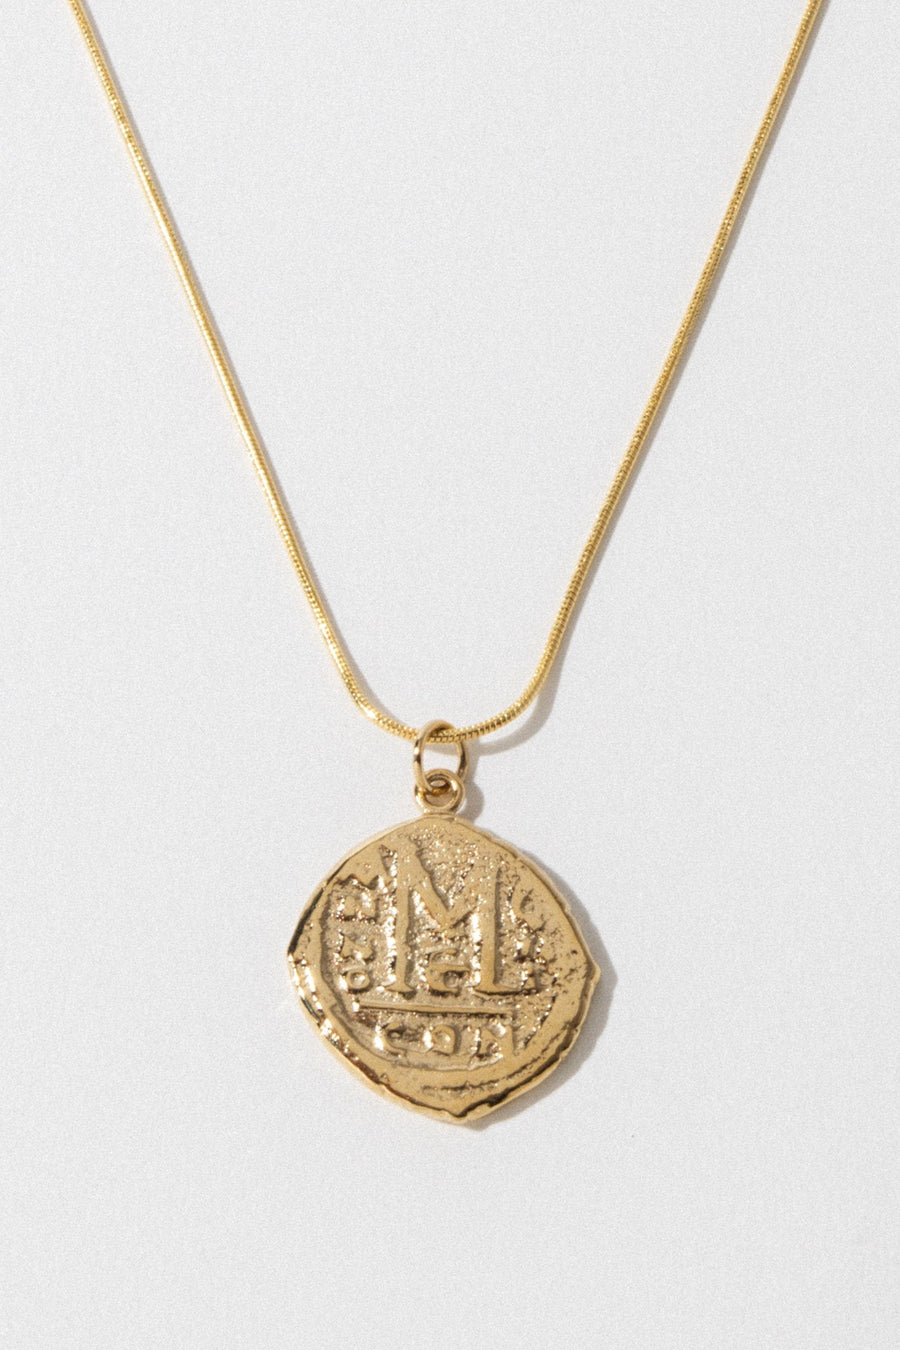 Dona Italia Jewelry Gold / 18 Inches Cortez Coin Necklace